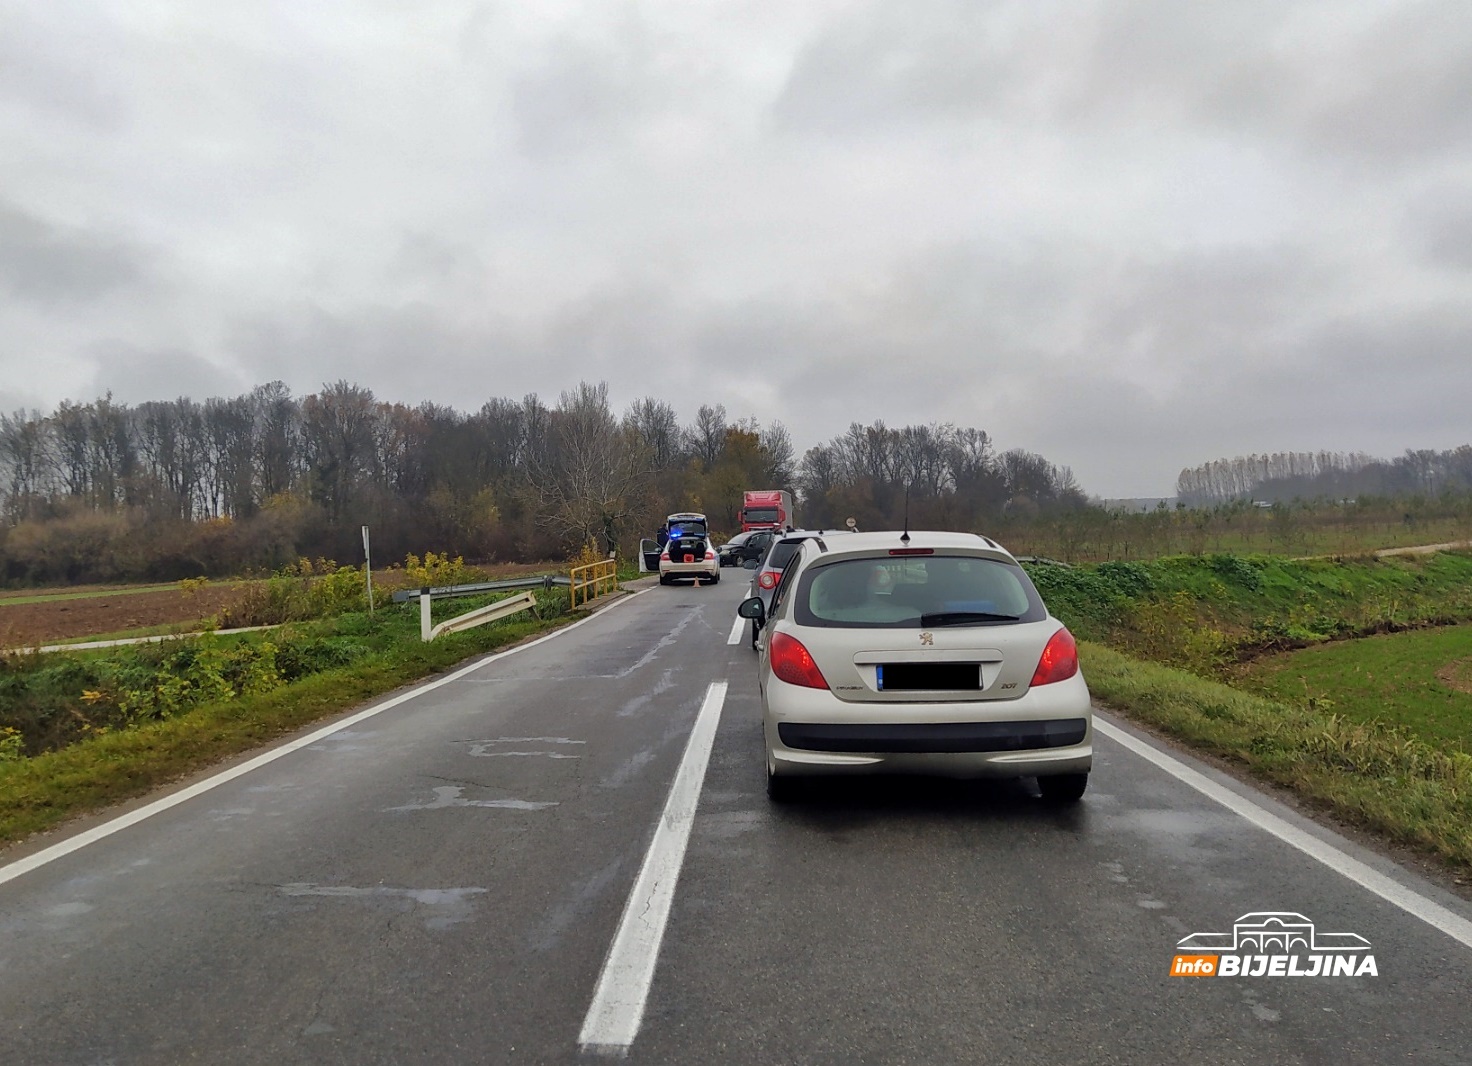 Nezgoda na putu Bijeljina - Rača, saobraćaj se preusmjerava alternativnim pravcem (FOTO)